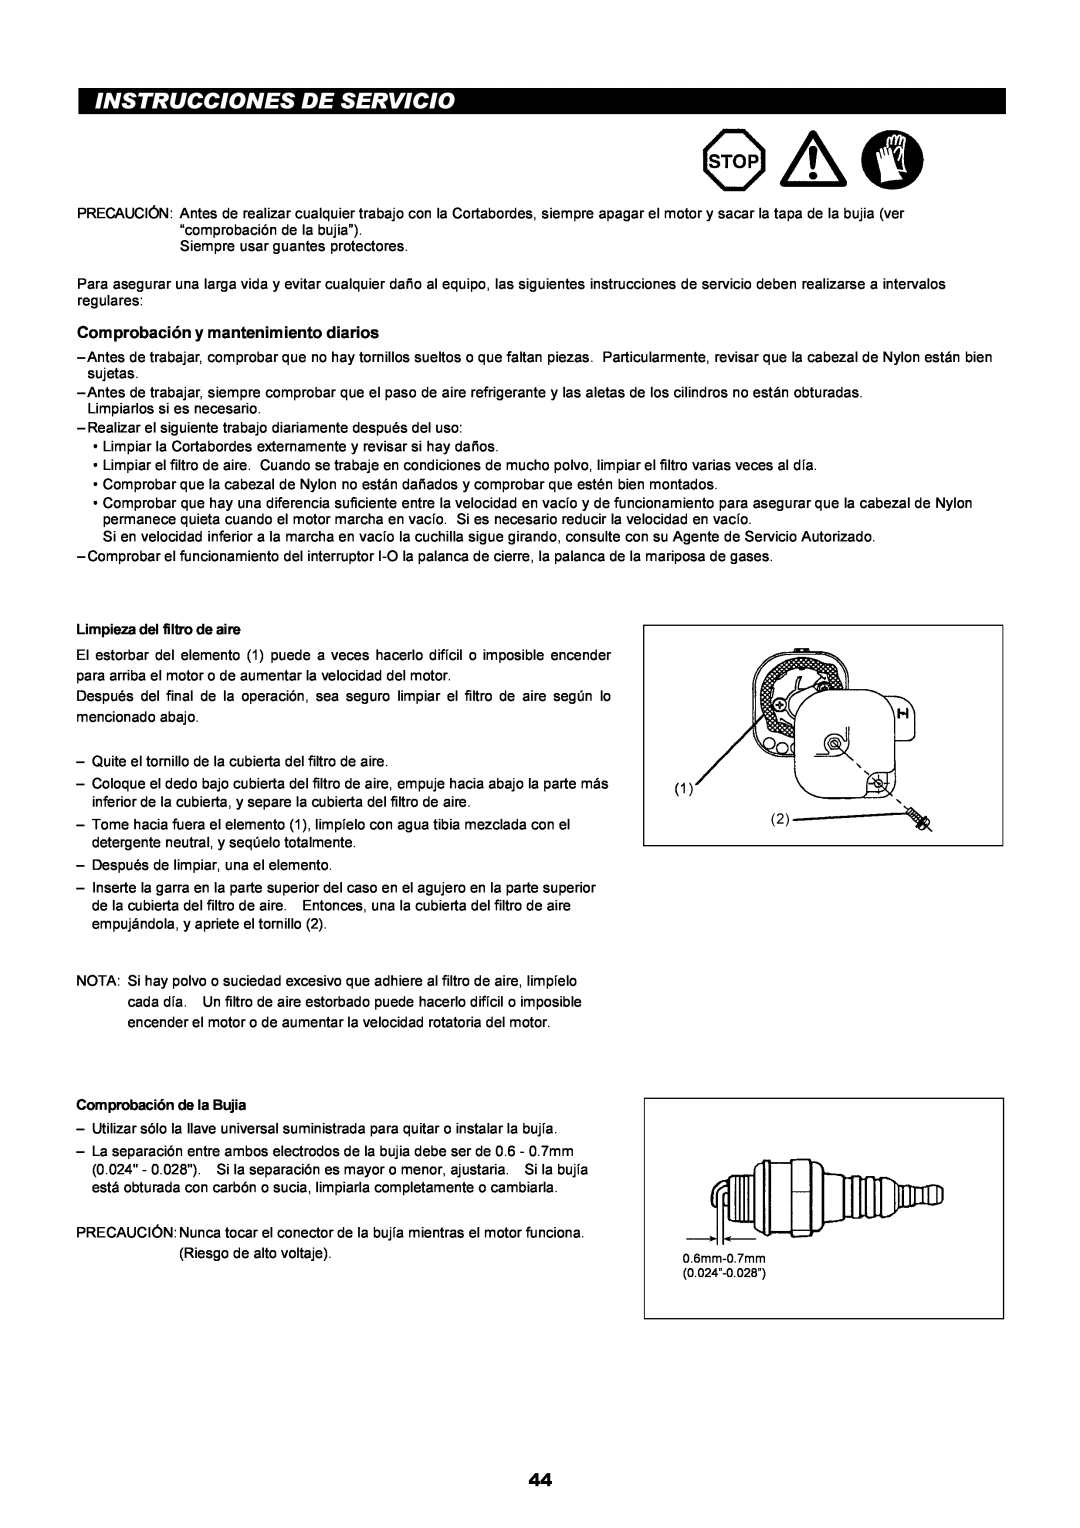 Makita LT-210 instruction manual Instrucciones De Servicio, Comprobación y mantenimiento diarios 